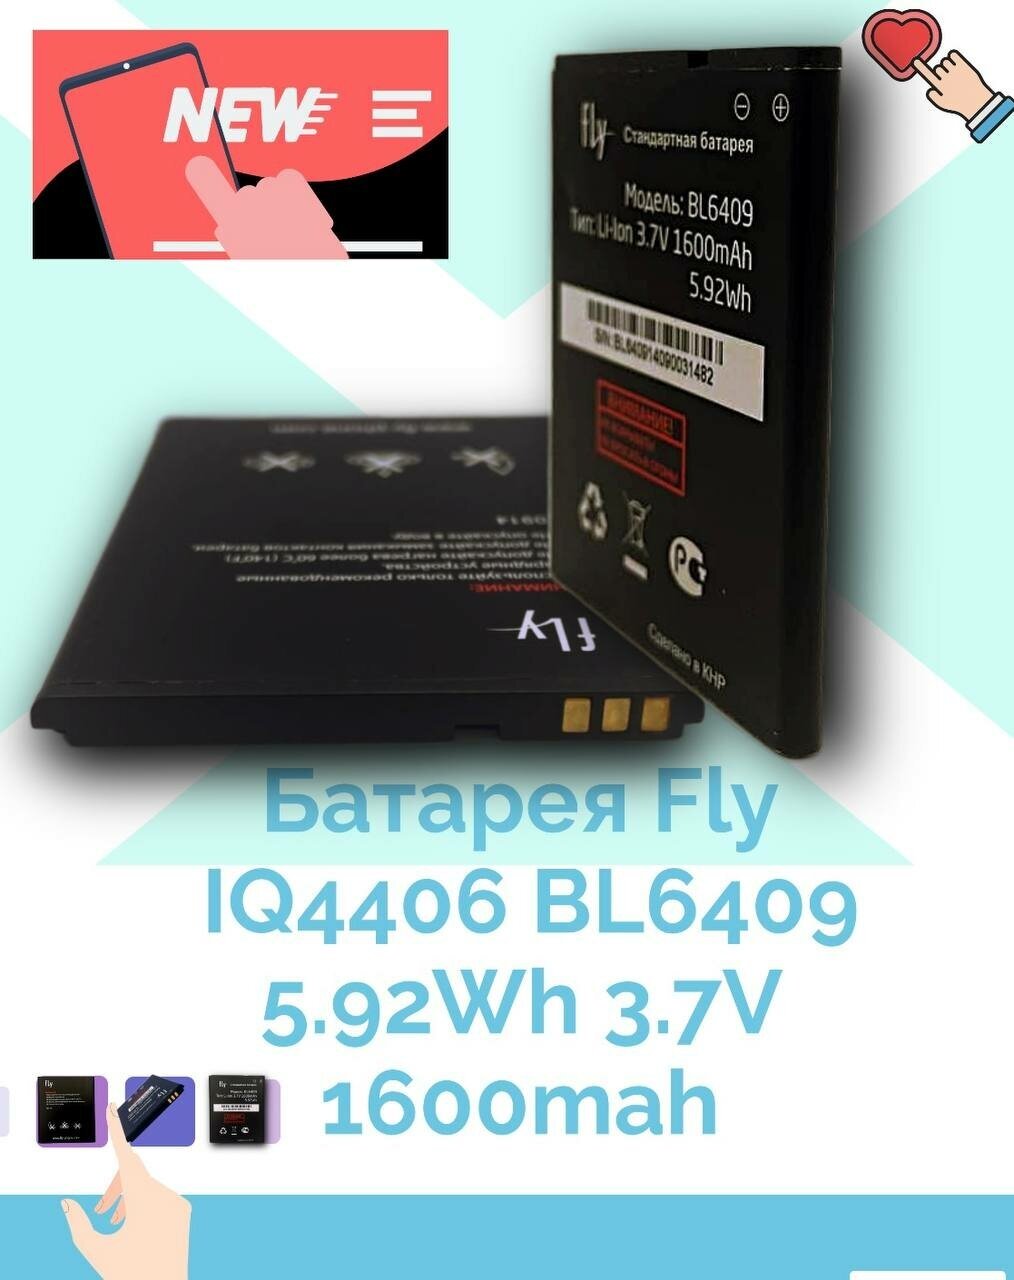 Батарея BAT АКБ Fly IQ4406 BL6409 5.92Wh 3.7V 1600mah